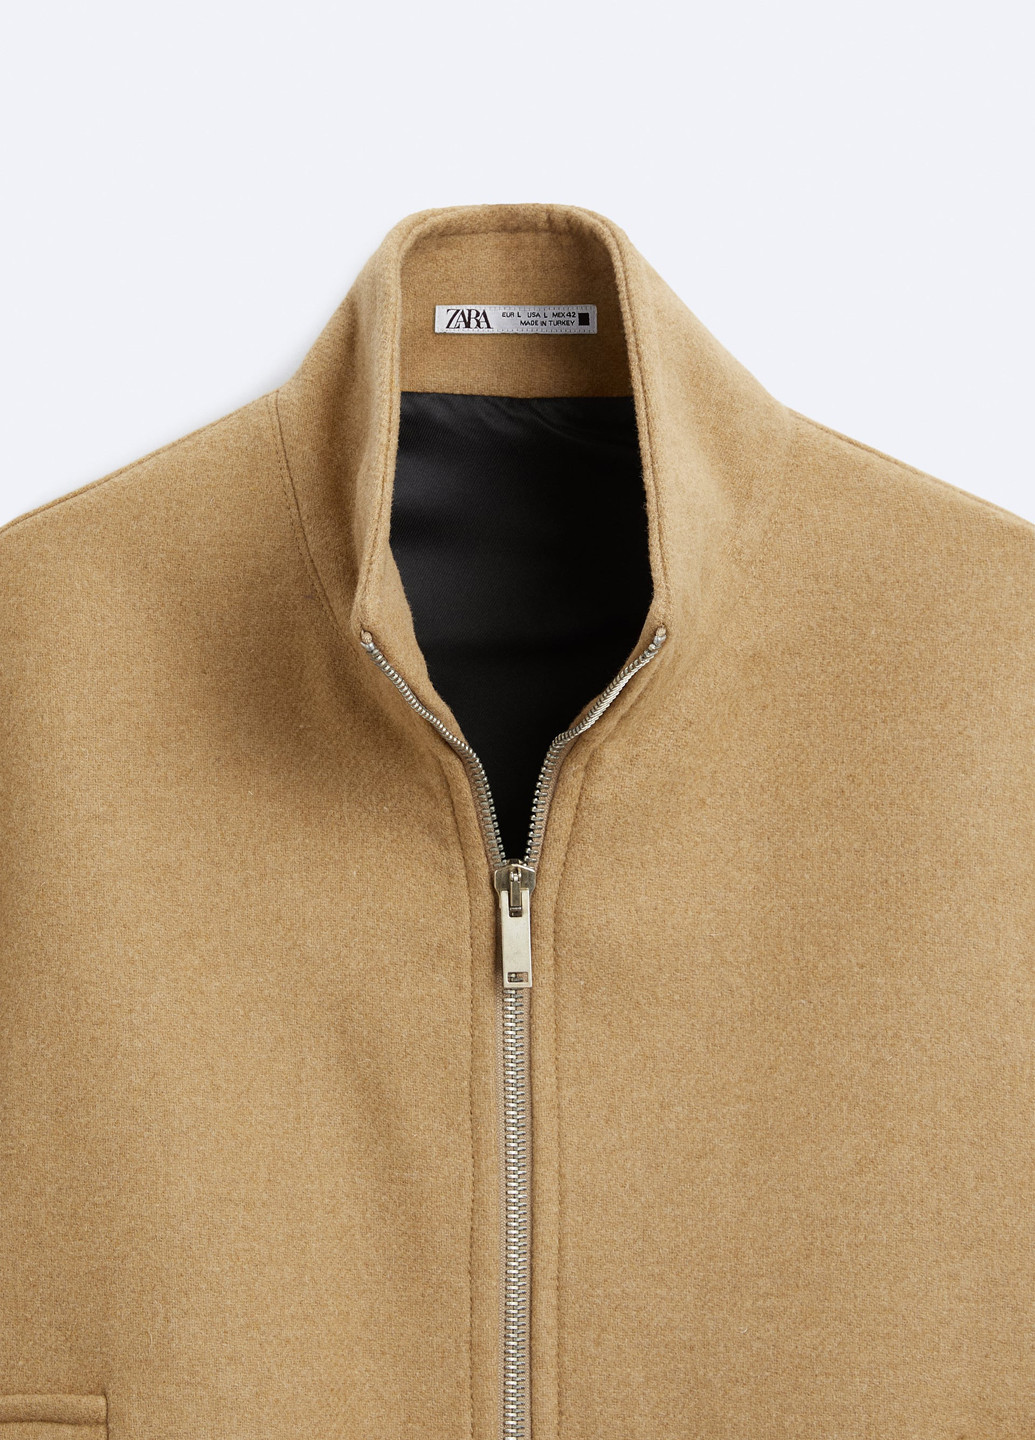 Светло-коричневая демисезонная куртка куртка-пиджак Zara